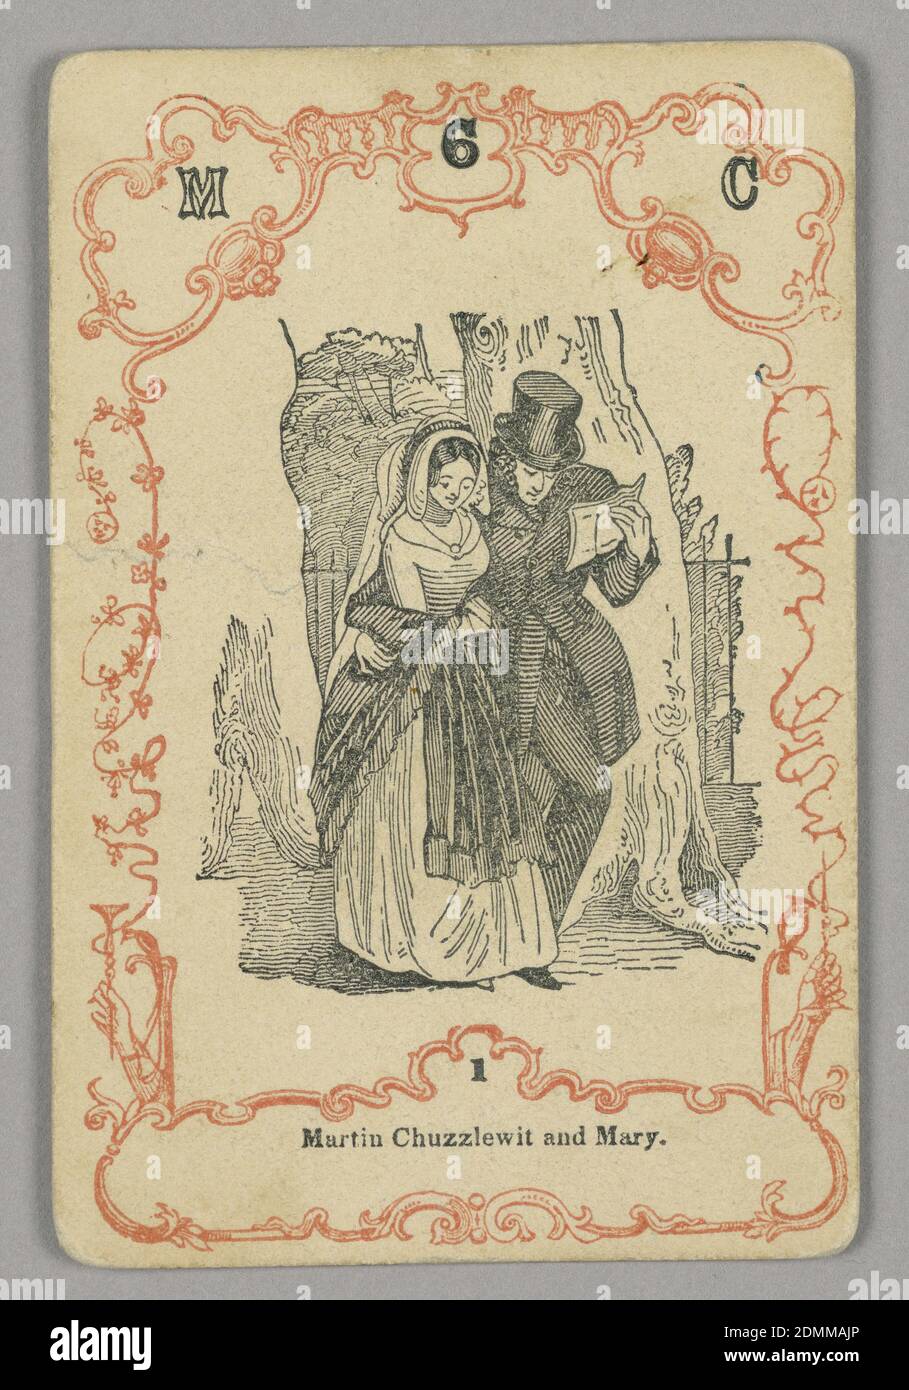 Jugar a la carta, tinta roja y negra, papel, en la parte superior: M 6 C; debajo de la imagen central: 1, Europa, ca. 1855, jugando a la carta Foto de stock